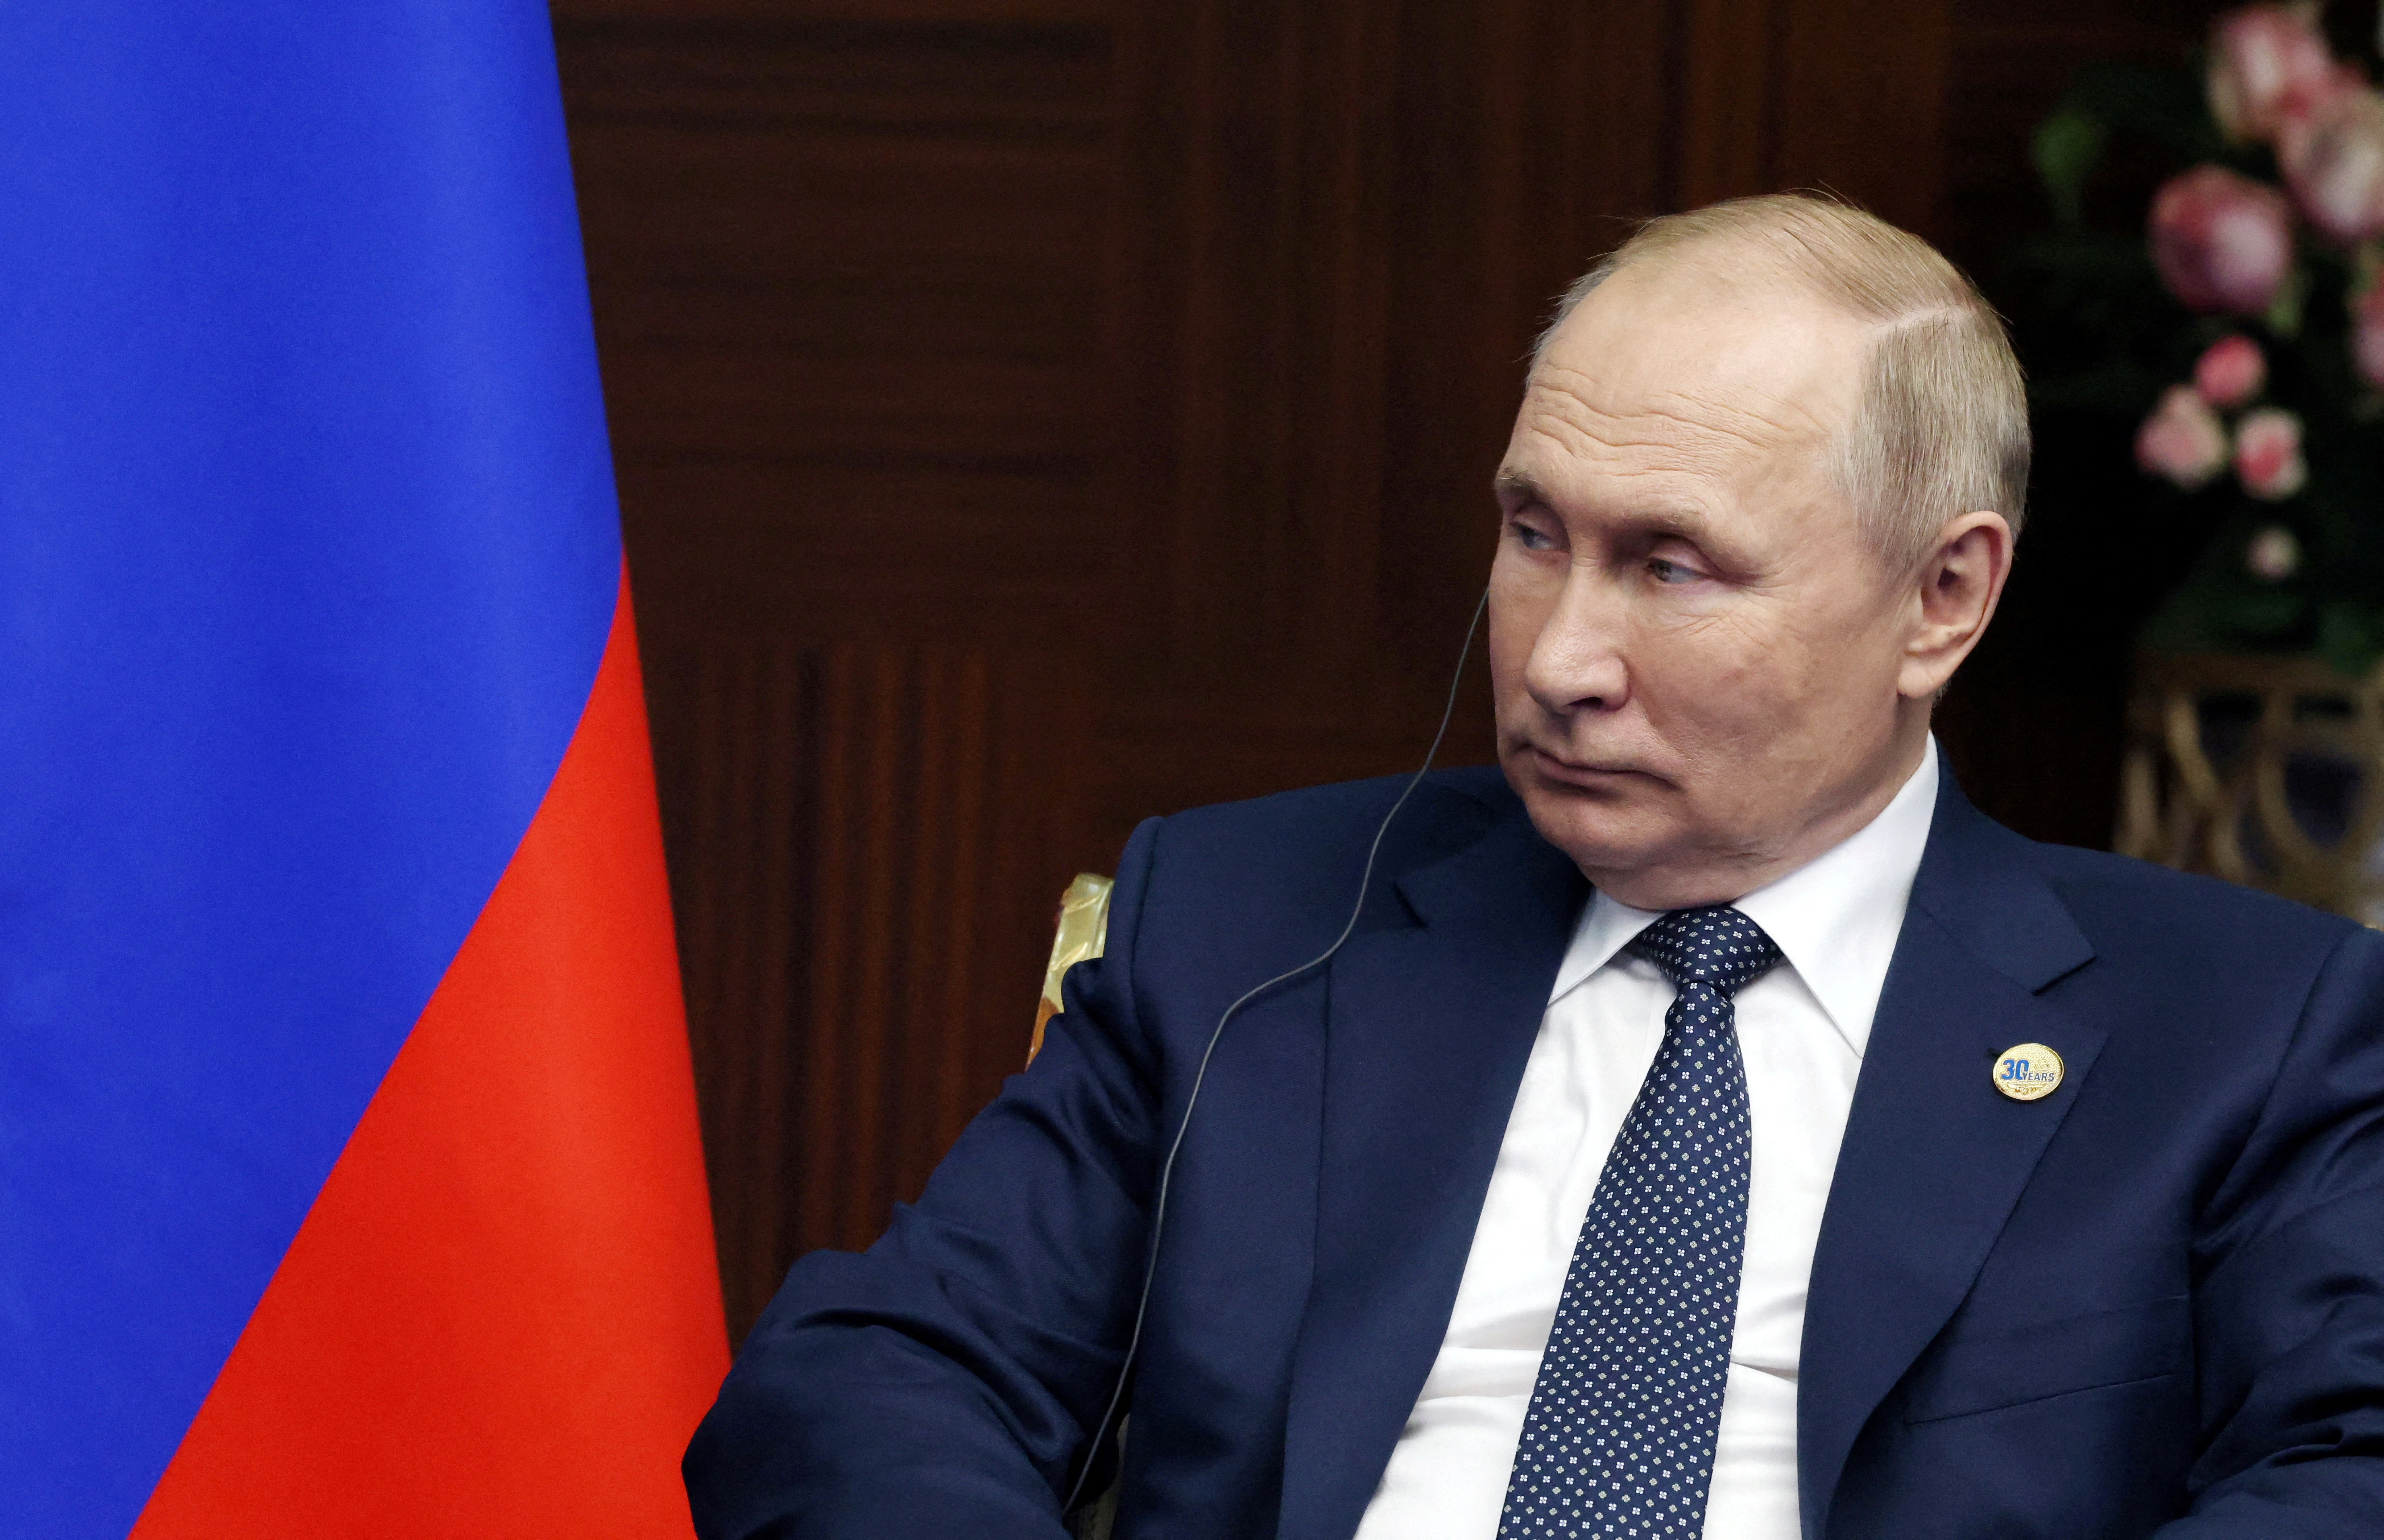 El presidente de Rusia, Vladímir Putin (Sputnik/Vyacheslav Prokofyev/Pool vía REUTERS)
